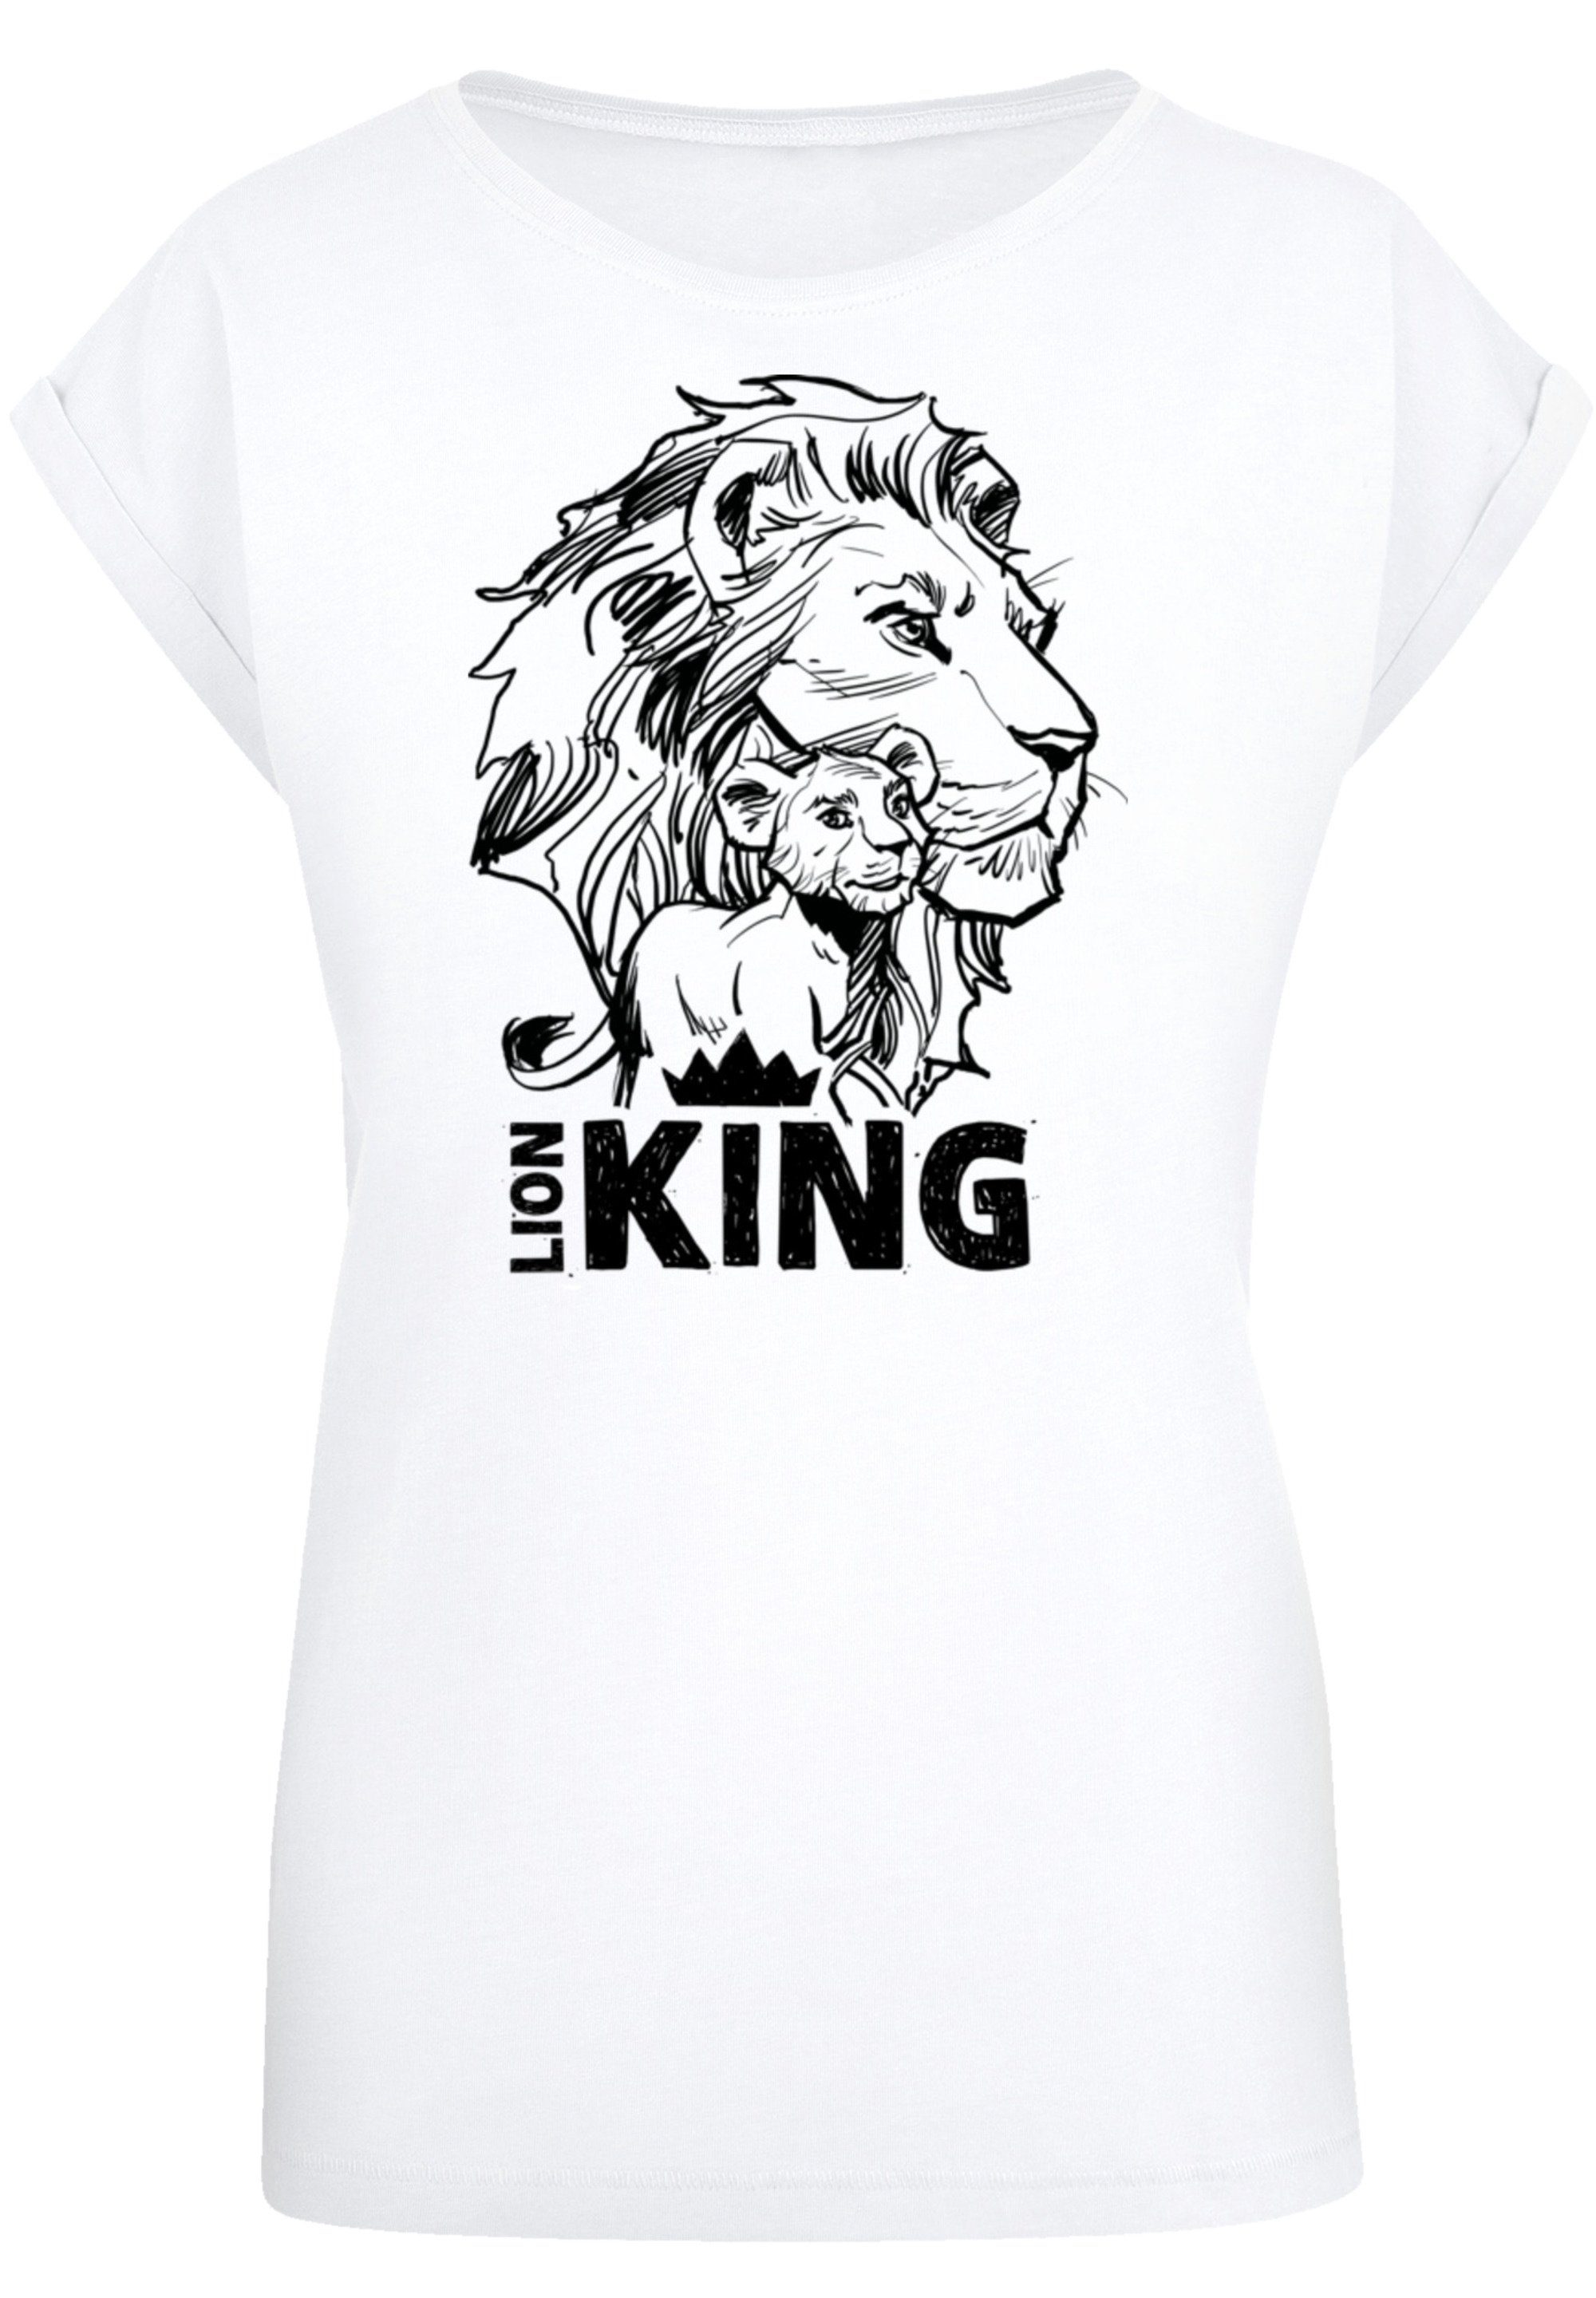 F4NT4STIC T-Shirt Disney König der Löwen Together white Premium Qualität,  Offiziell lizenziertes Disney T-Shirt